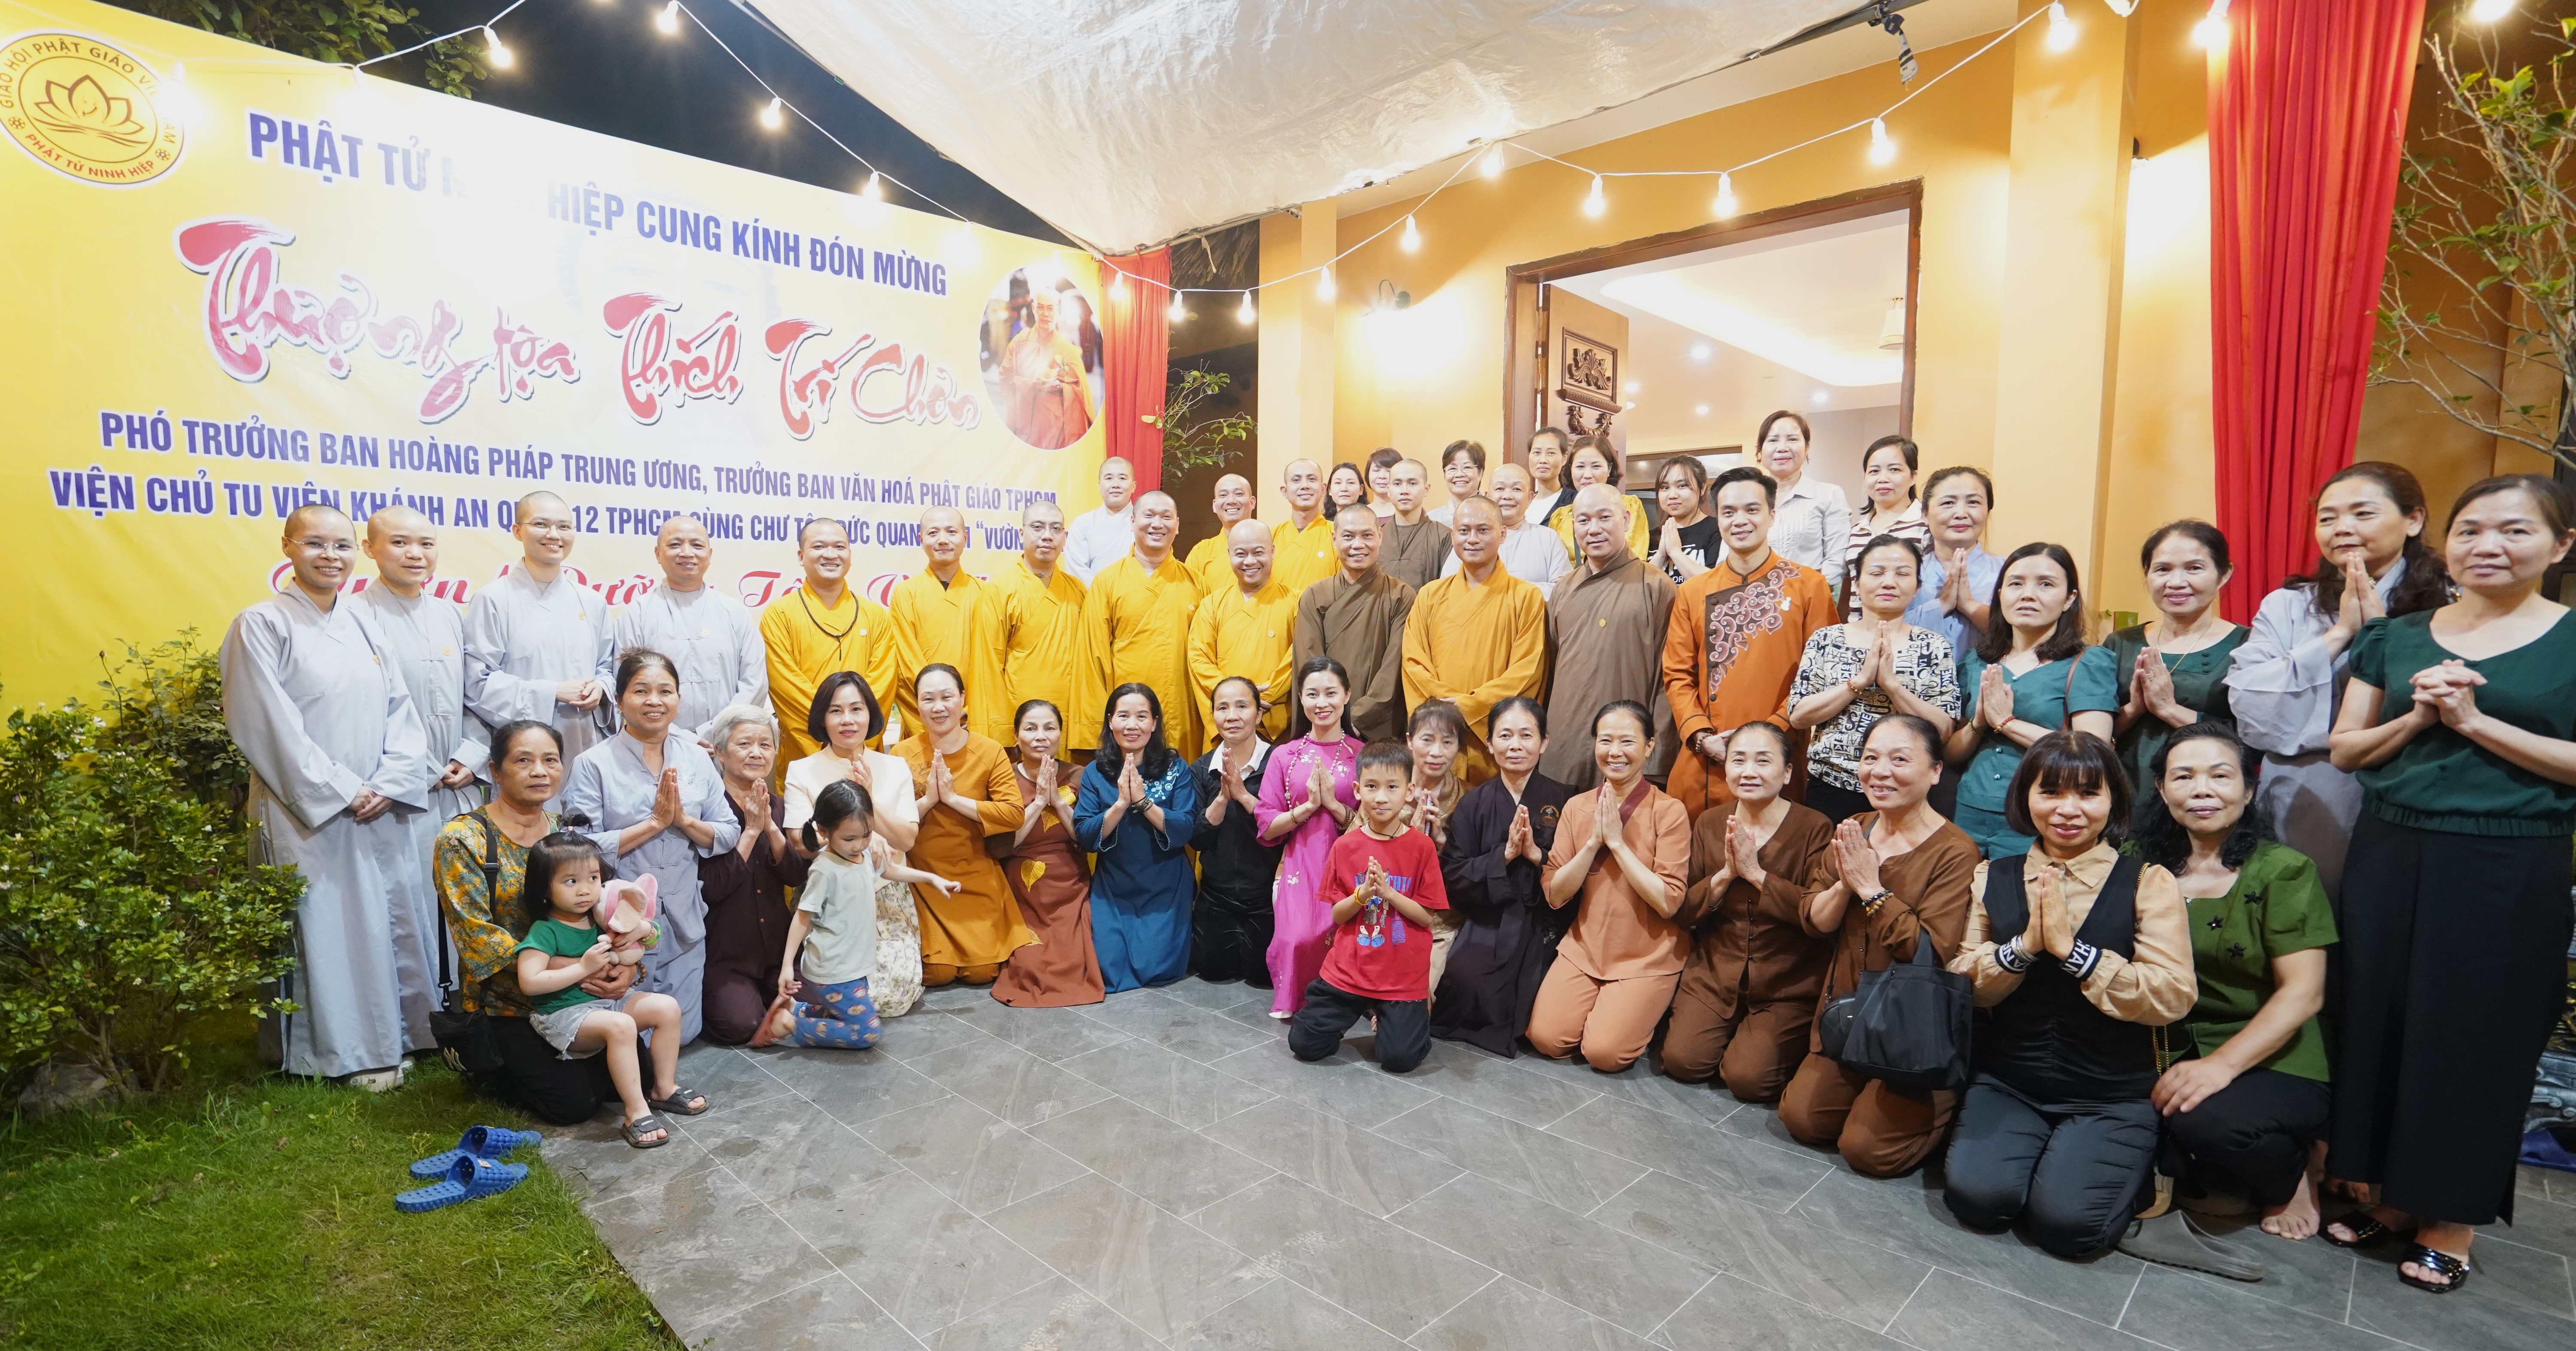 Buổi gặp mặt và pháp thoại chủ đề "Tịnh hóa thân tâm" tại Dưỡng Tâm viên, Ninh Hiệp, Hà Nội